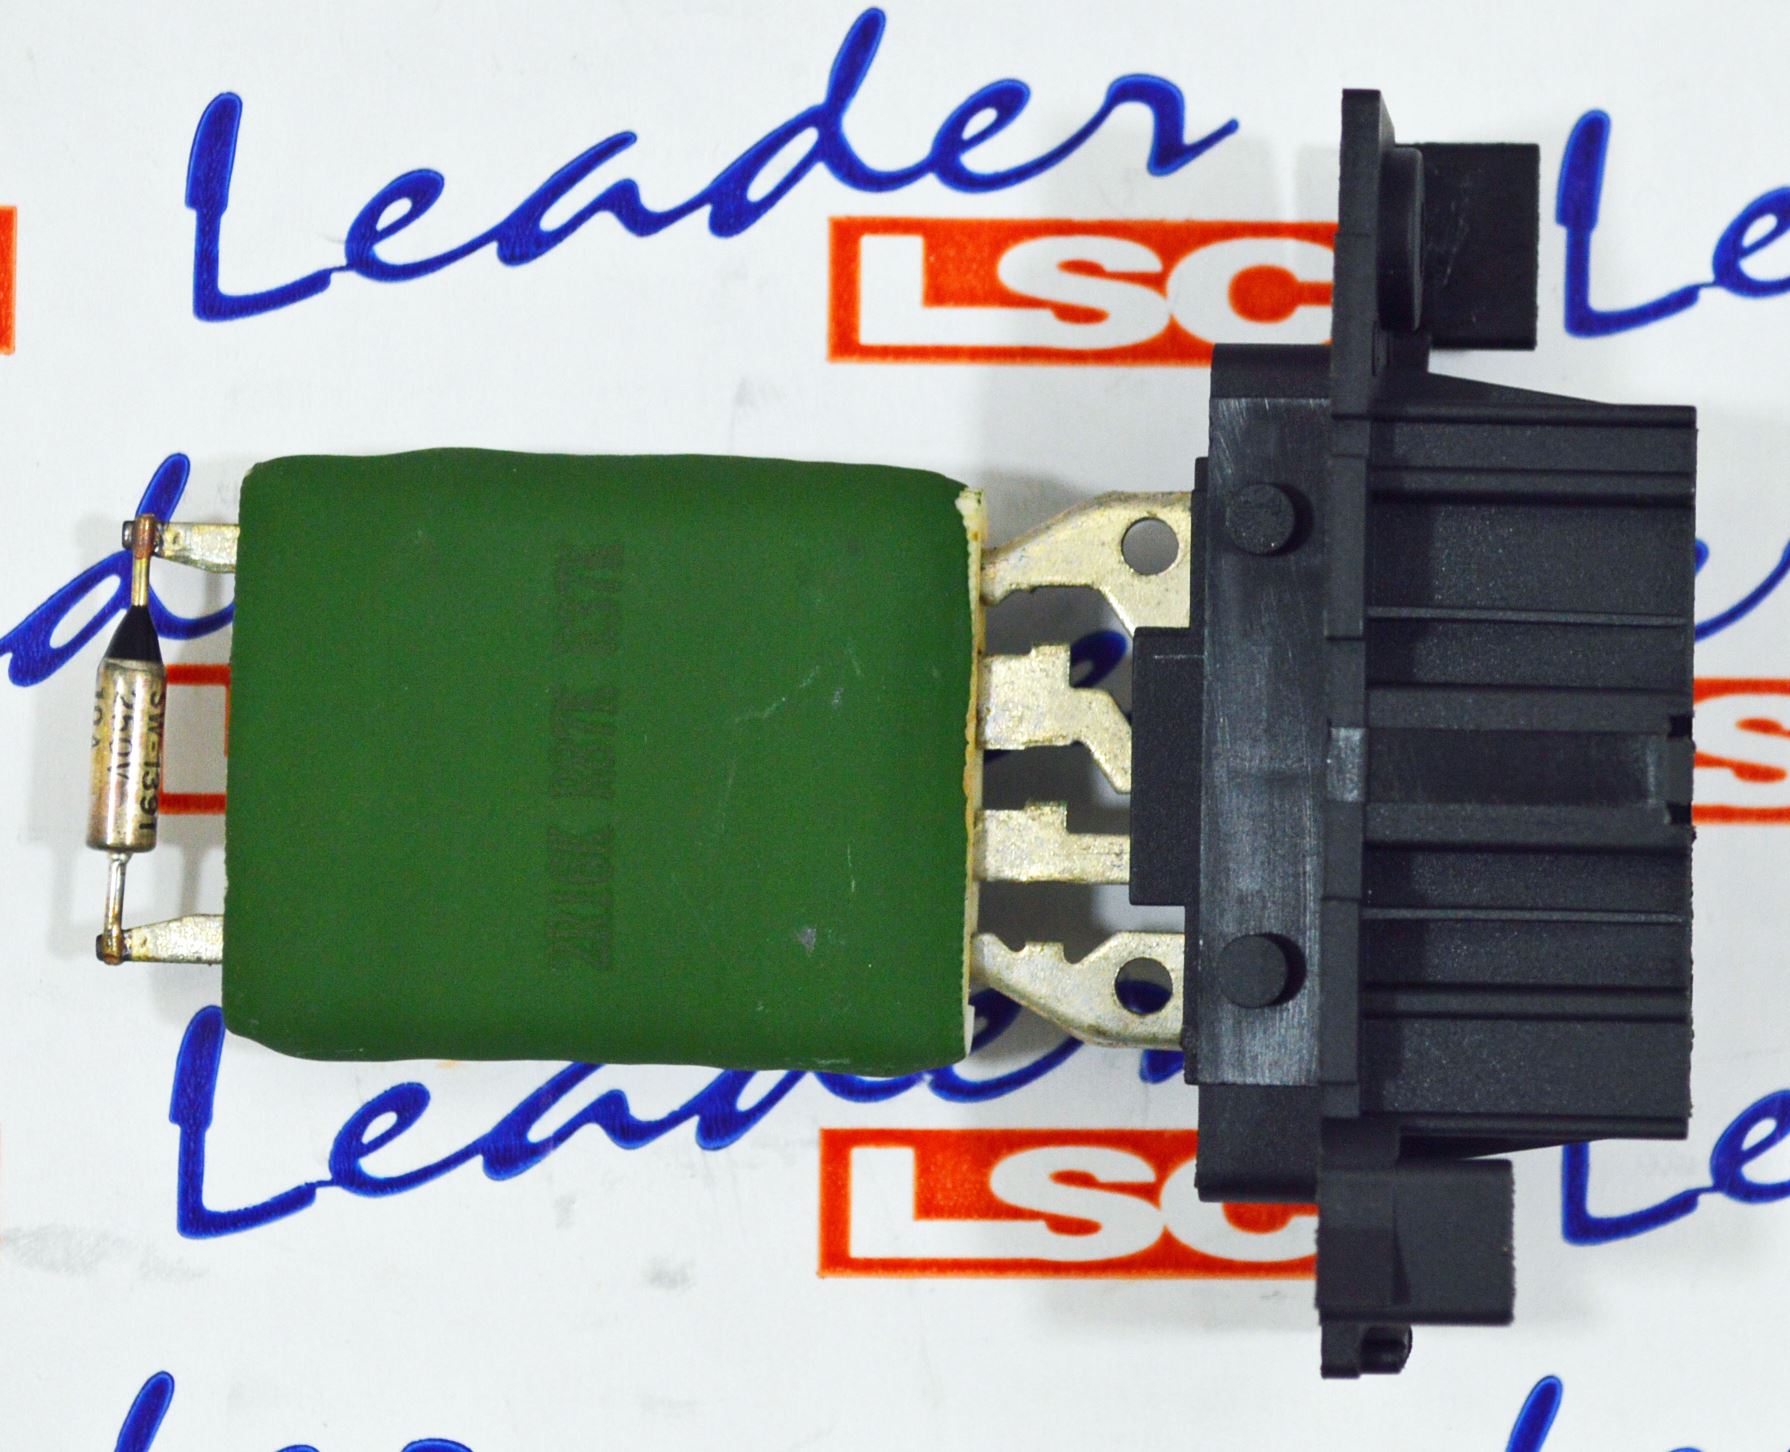 NEW from LSC GENUINE Heater Blower Fan Resistor LSC 13248240 